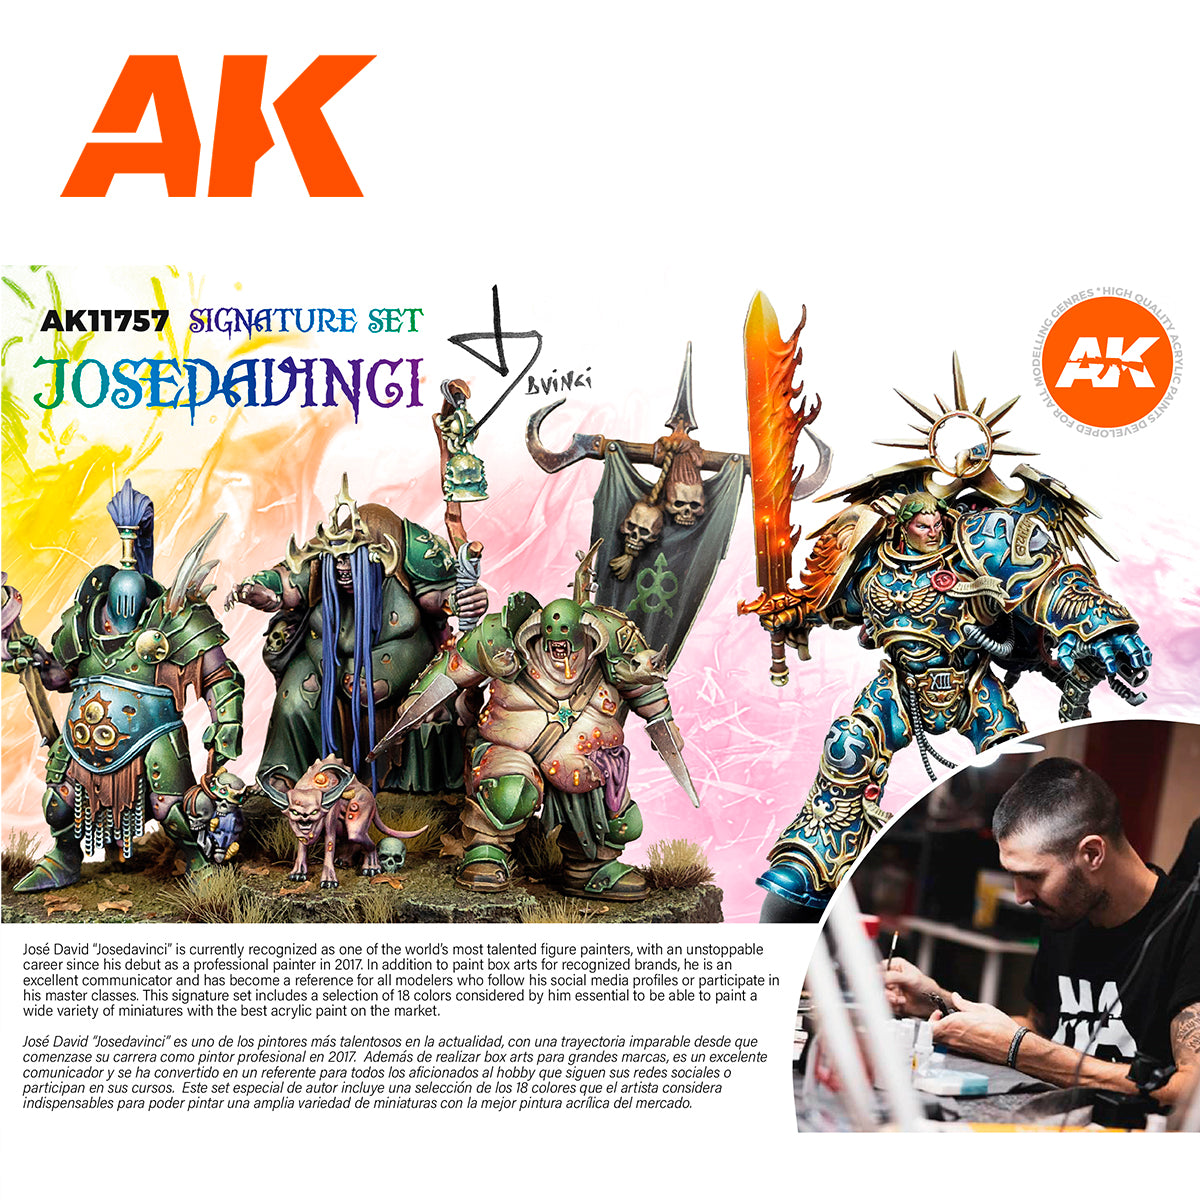 AK 3Gen Signature Set – 18 couleurs acryliques choisies par Jose Davinci